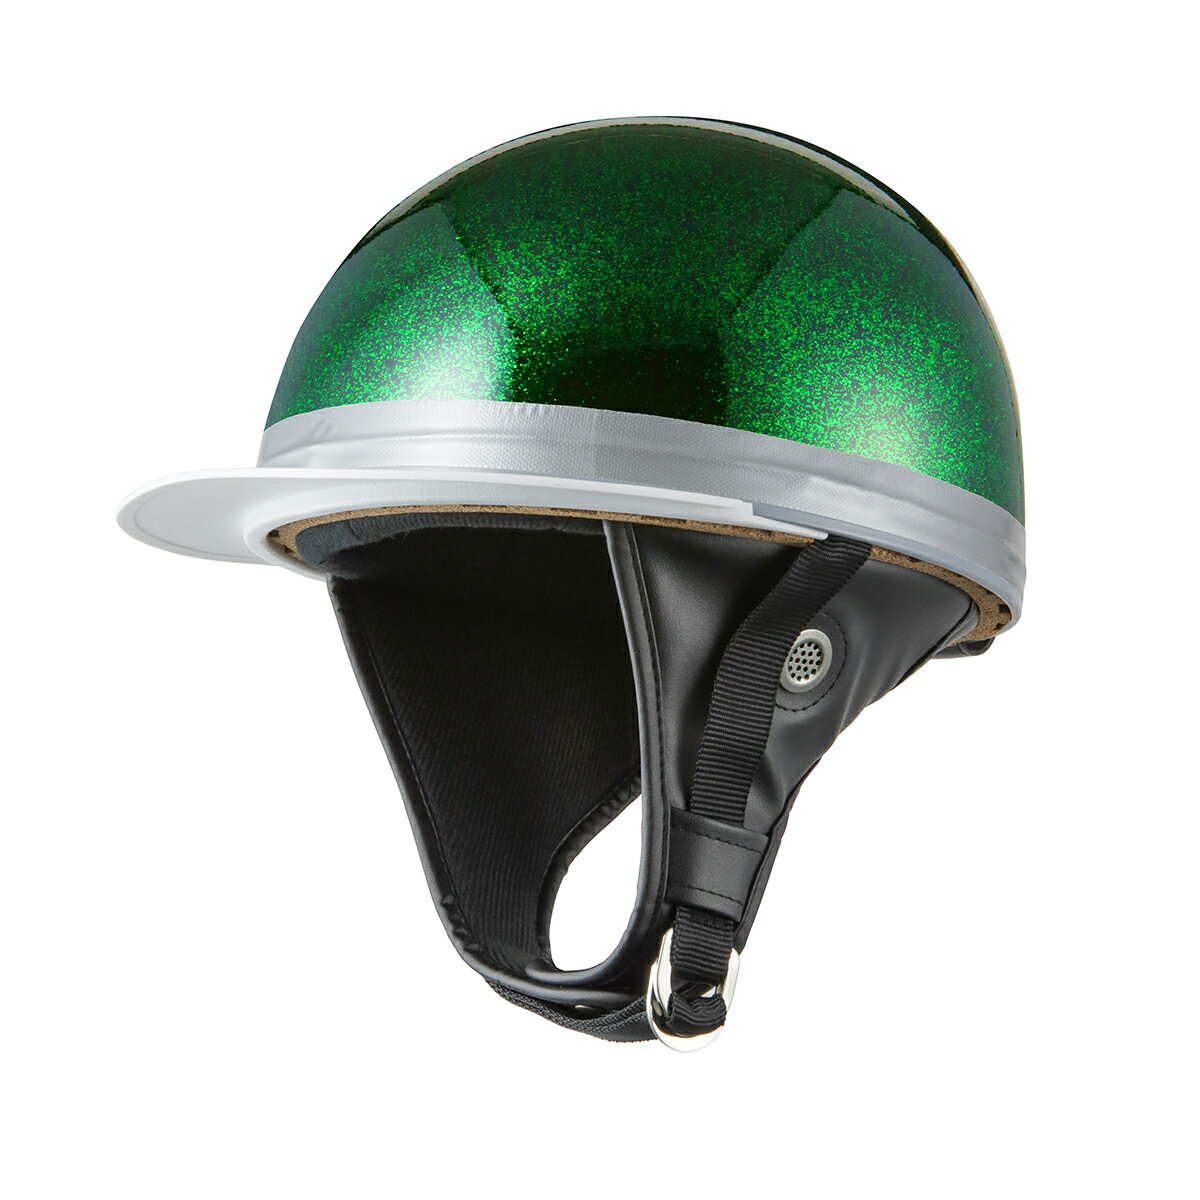 バイクヘルメット コルク半キャップ 濃緑 ダークグリーンラメ 濃緑ラメ 三つボタン フリーサイズ 124cc以下 SG規格適合 PSCマーク付 3つボタン バイク オートバイ ヘルメット 半帽 バイクパーツセンター